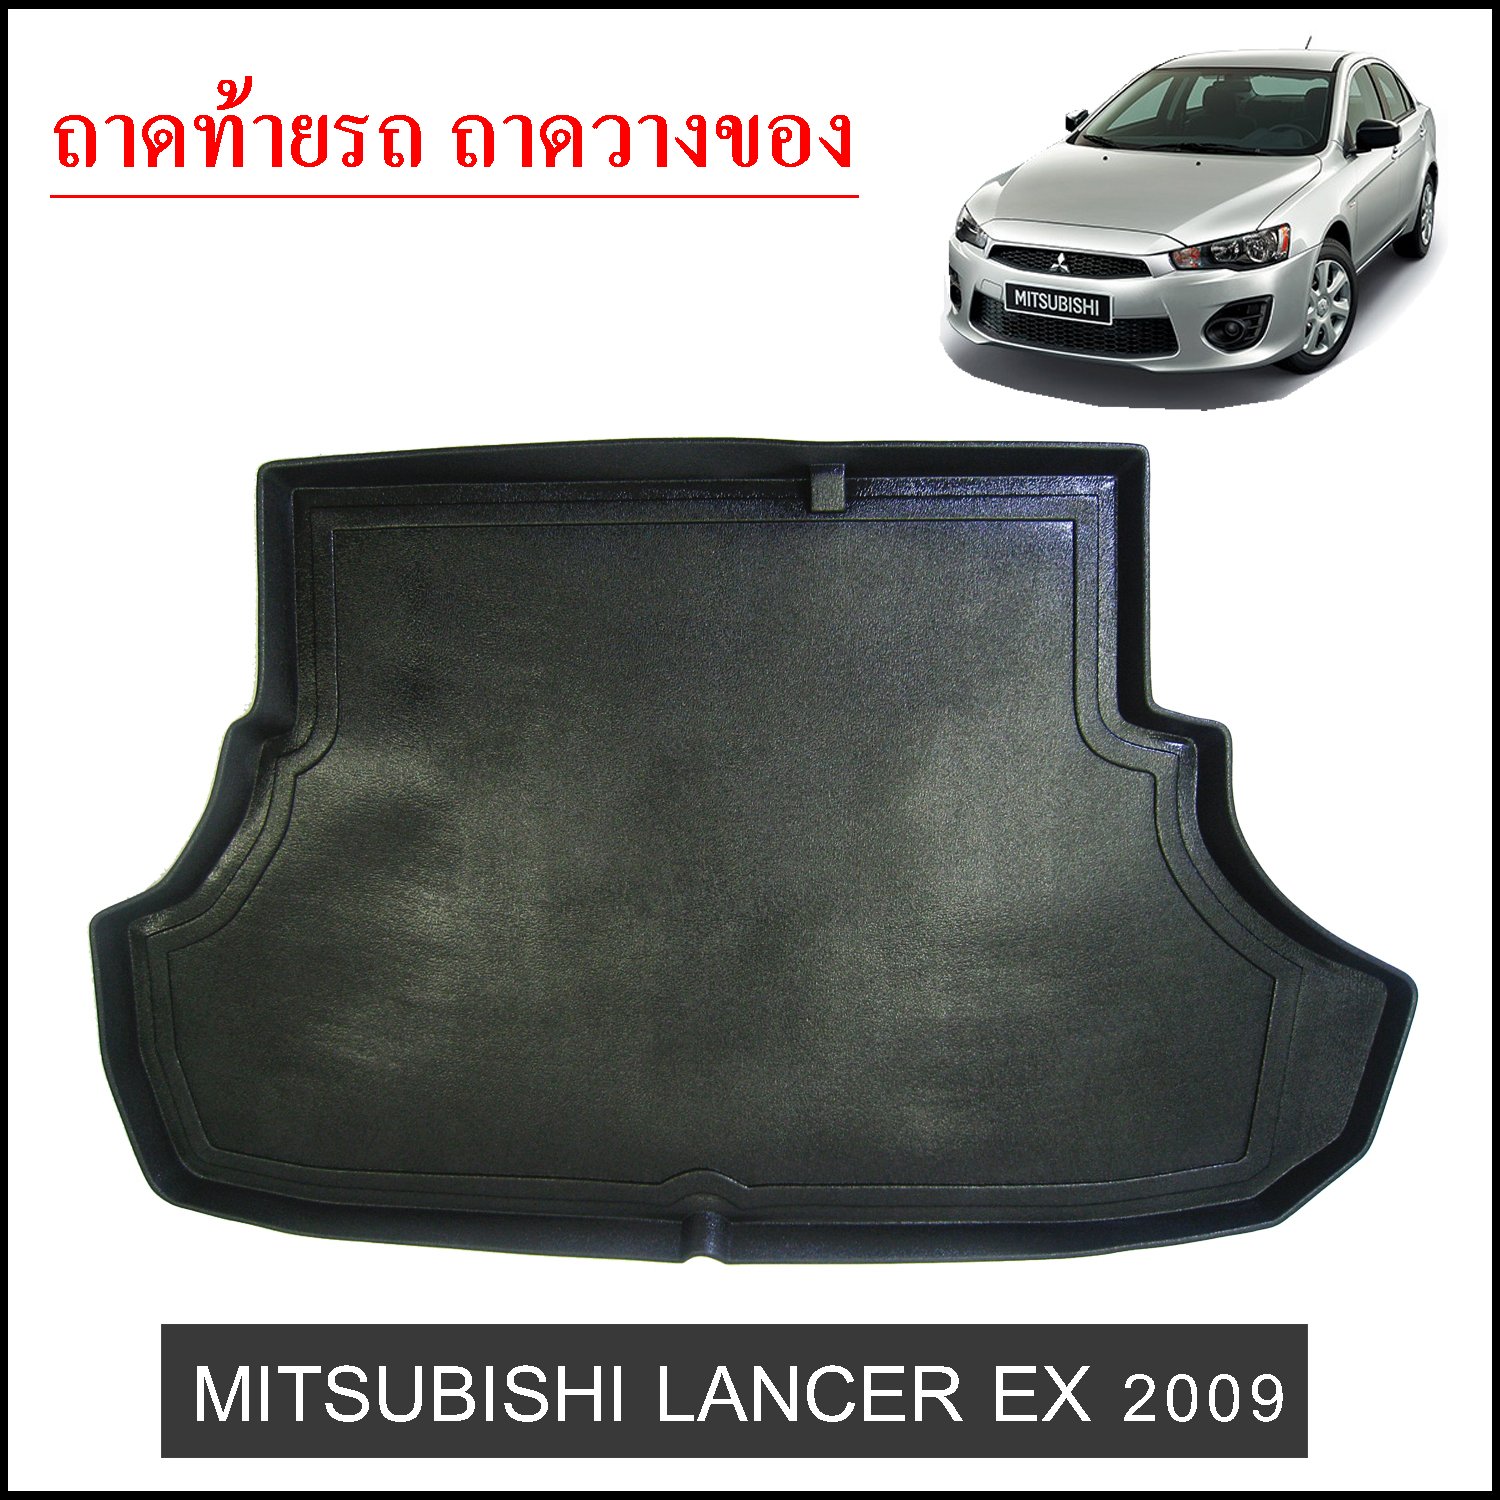 Mitsubishi Lancer EX 2009